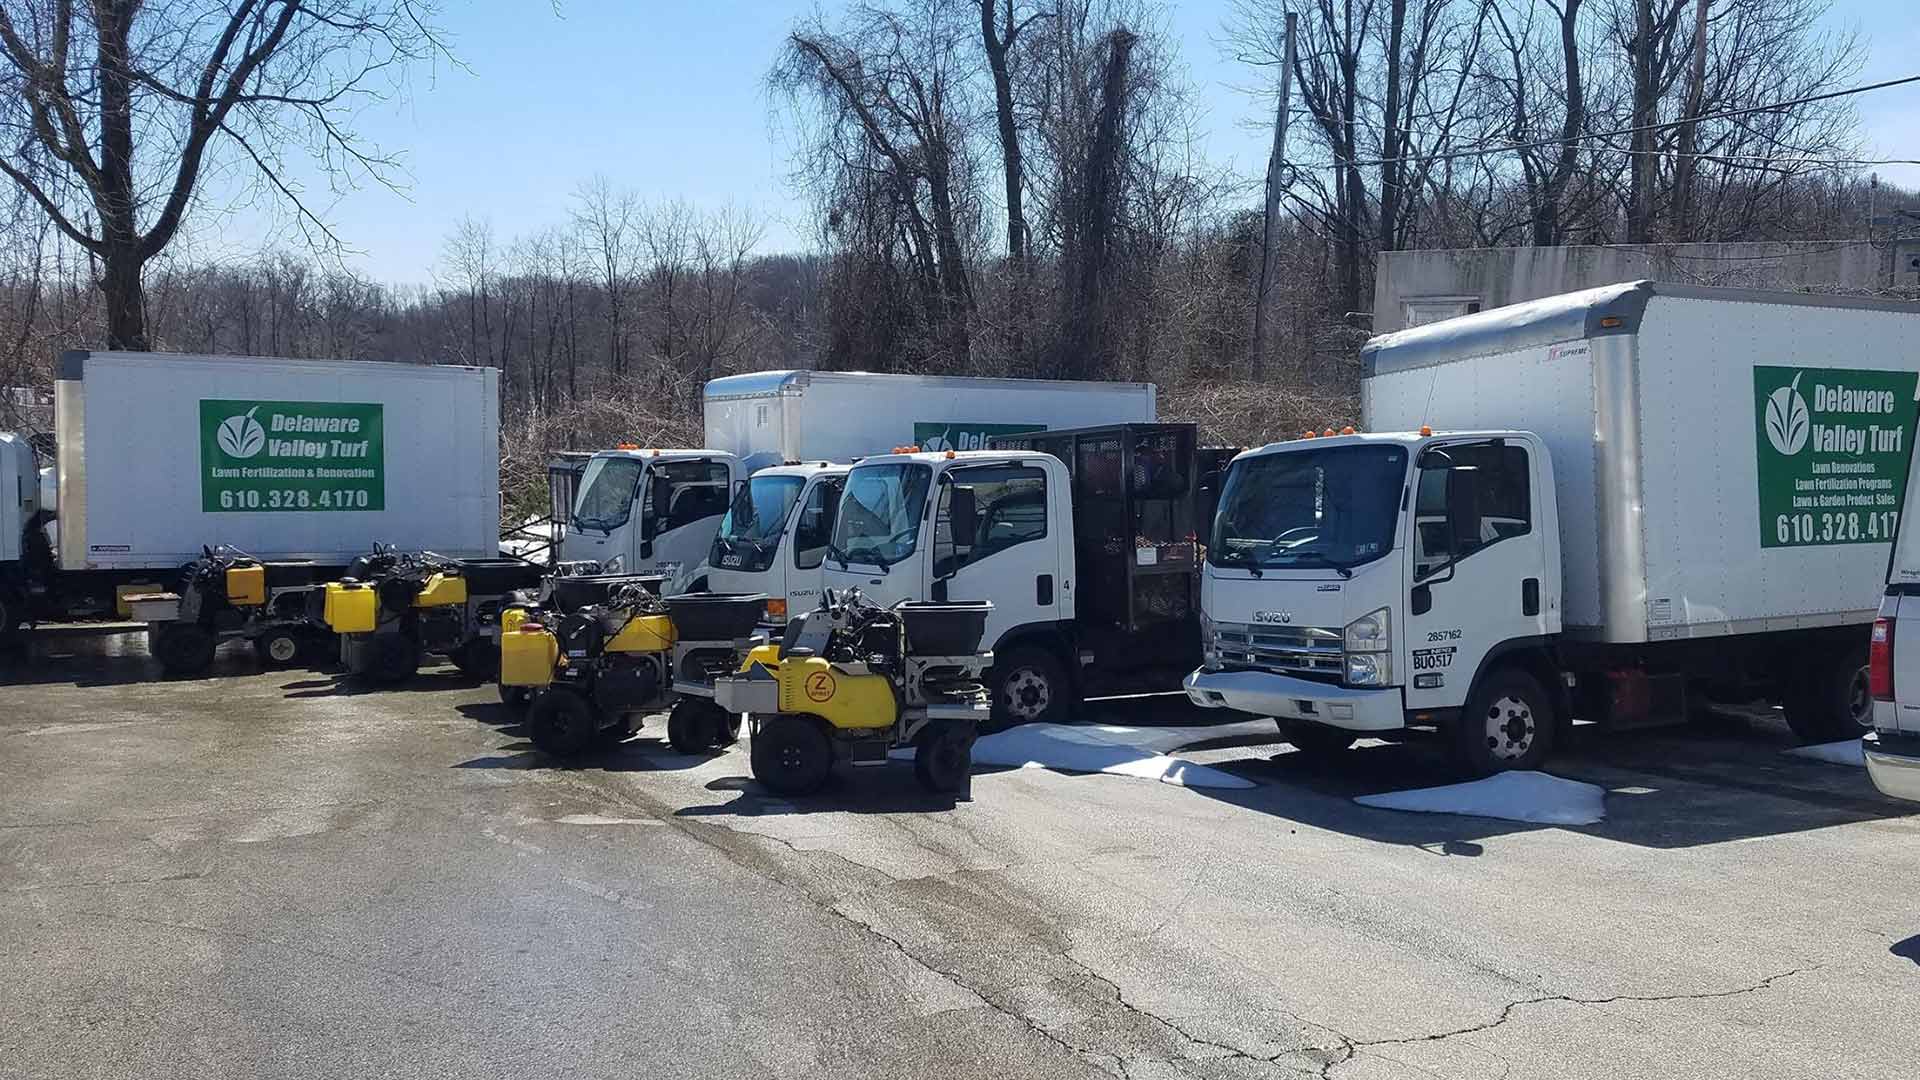 Work trucks in Bryn Mawr, PA.